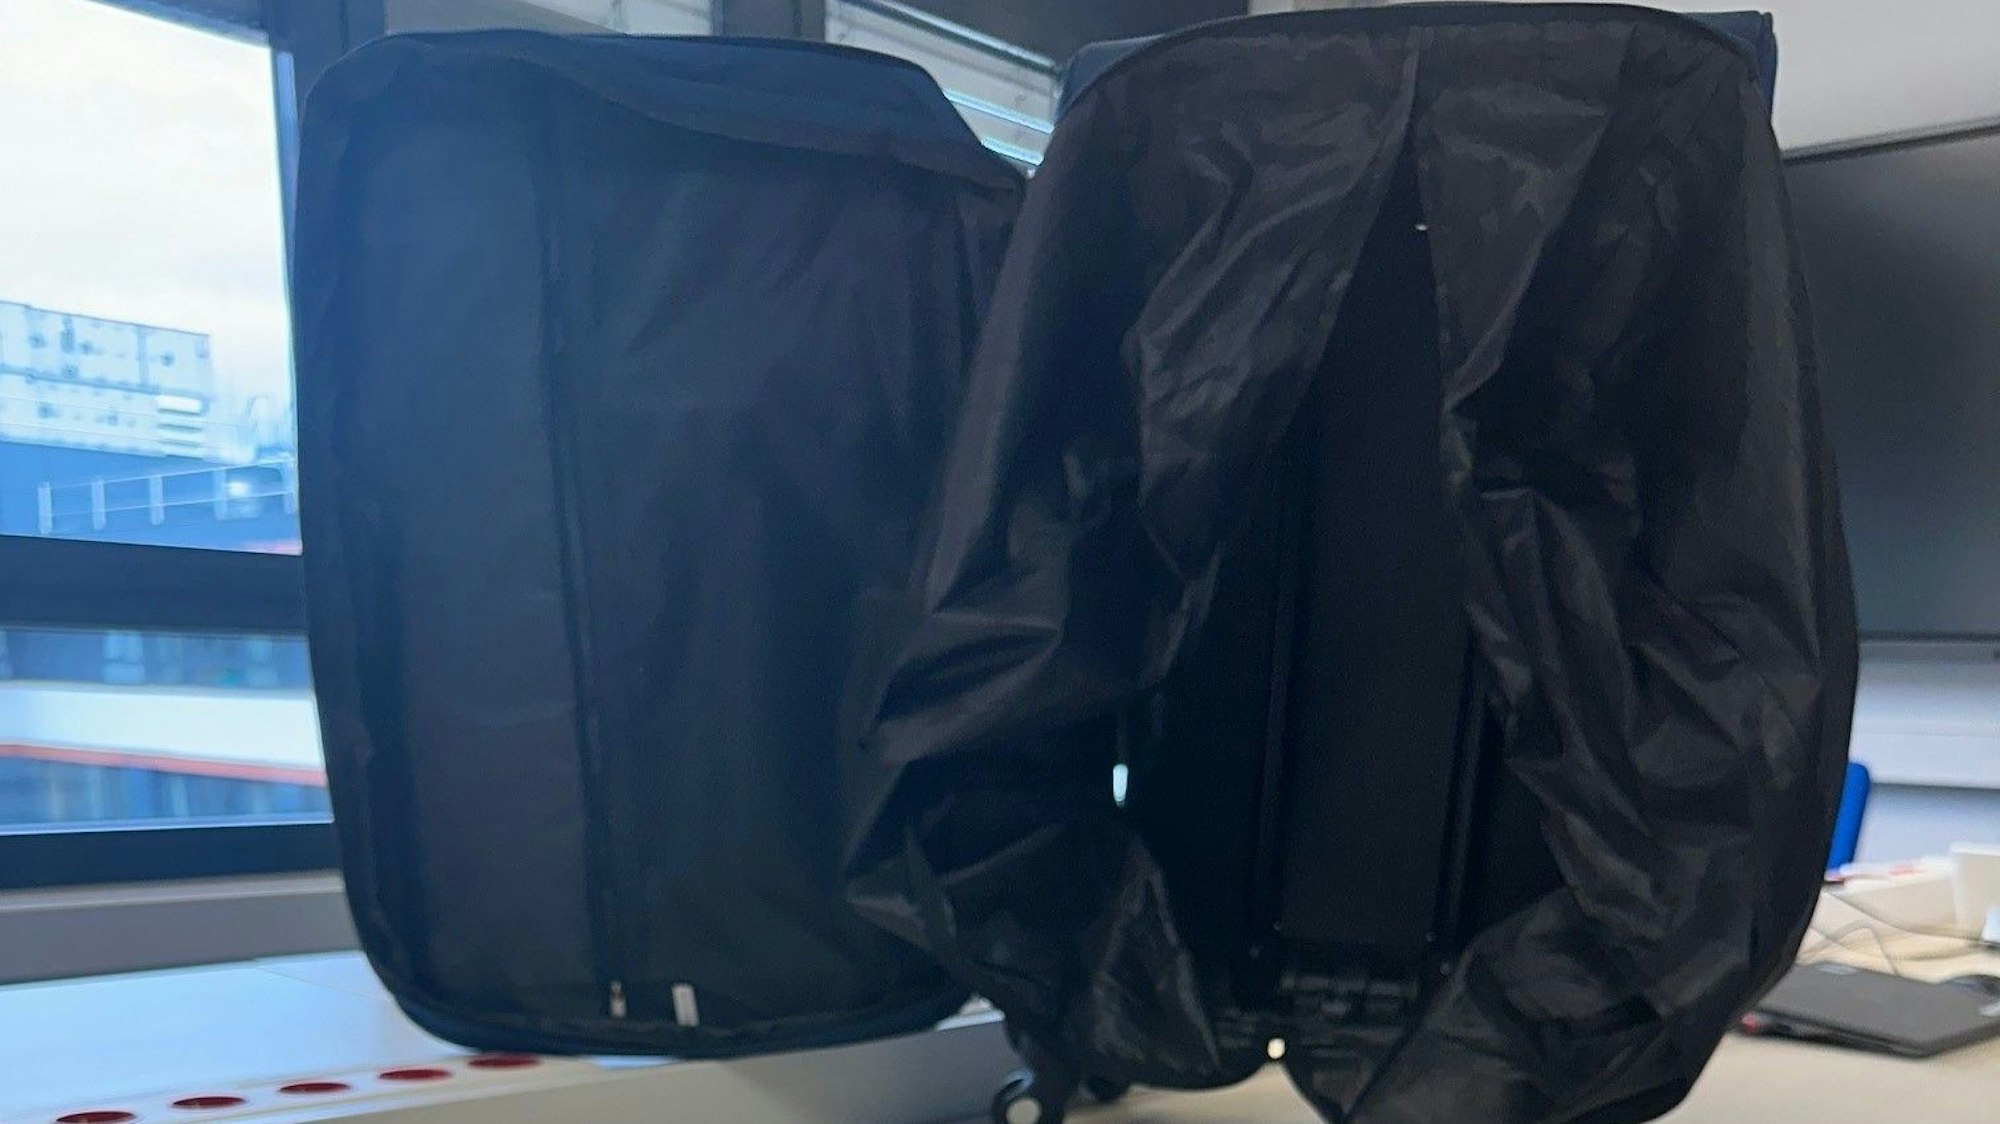 Ein vermeintlich leerer Koffer am Flughafen Köln/Bonn.